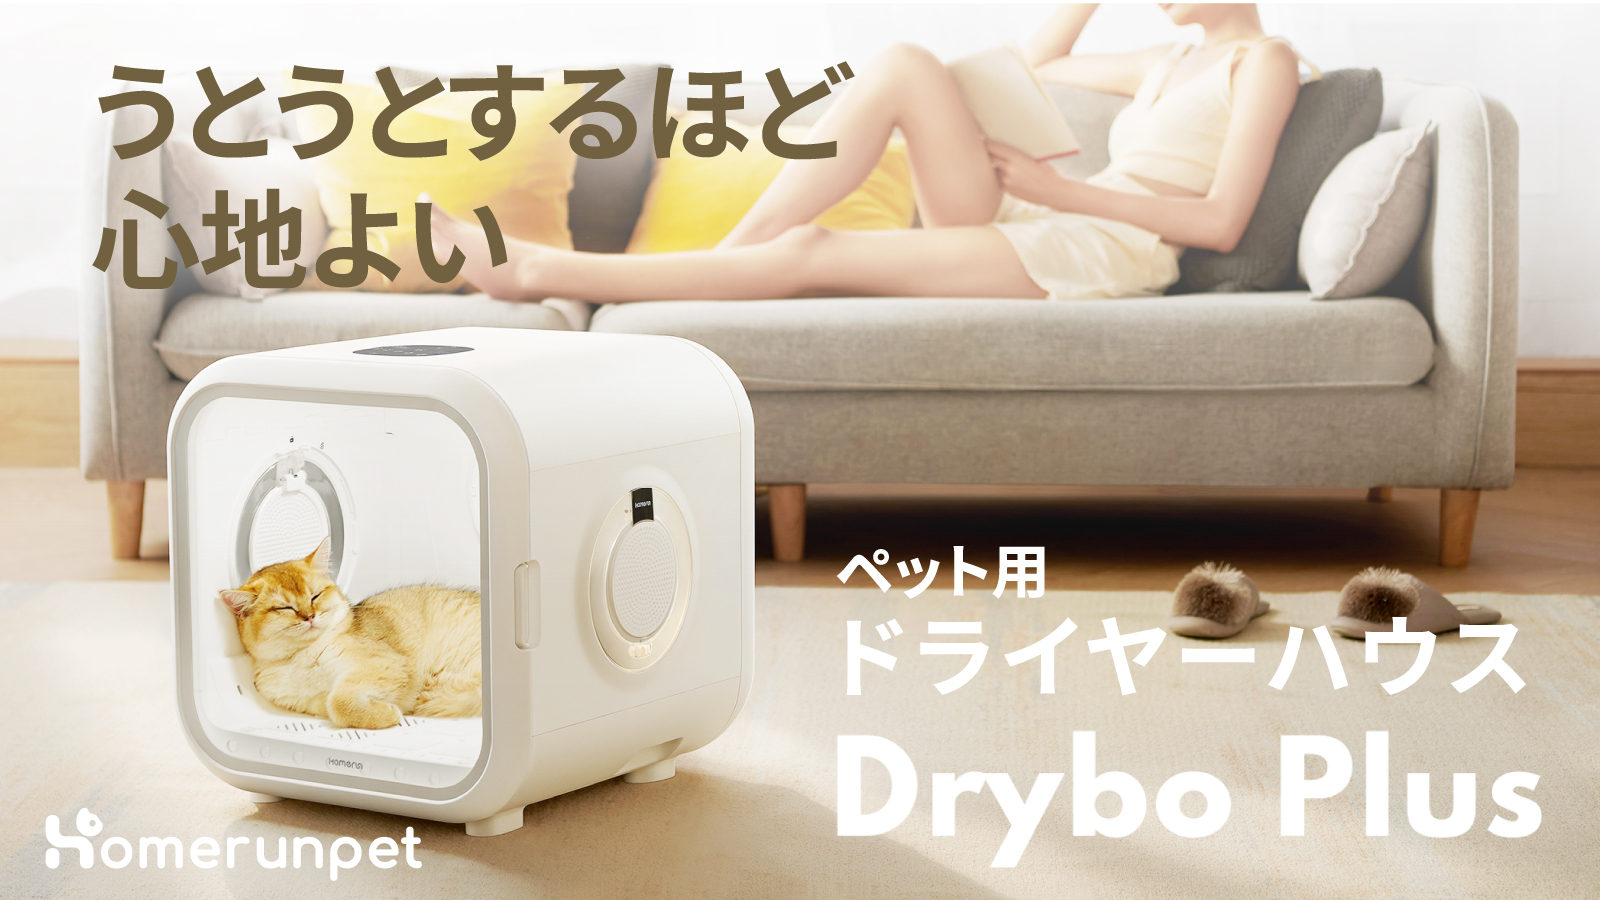 うとうとするほど心地よい、ペット用ドライヤーハウス「Drybo Plus